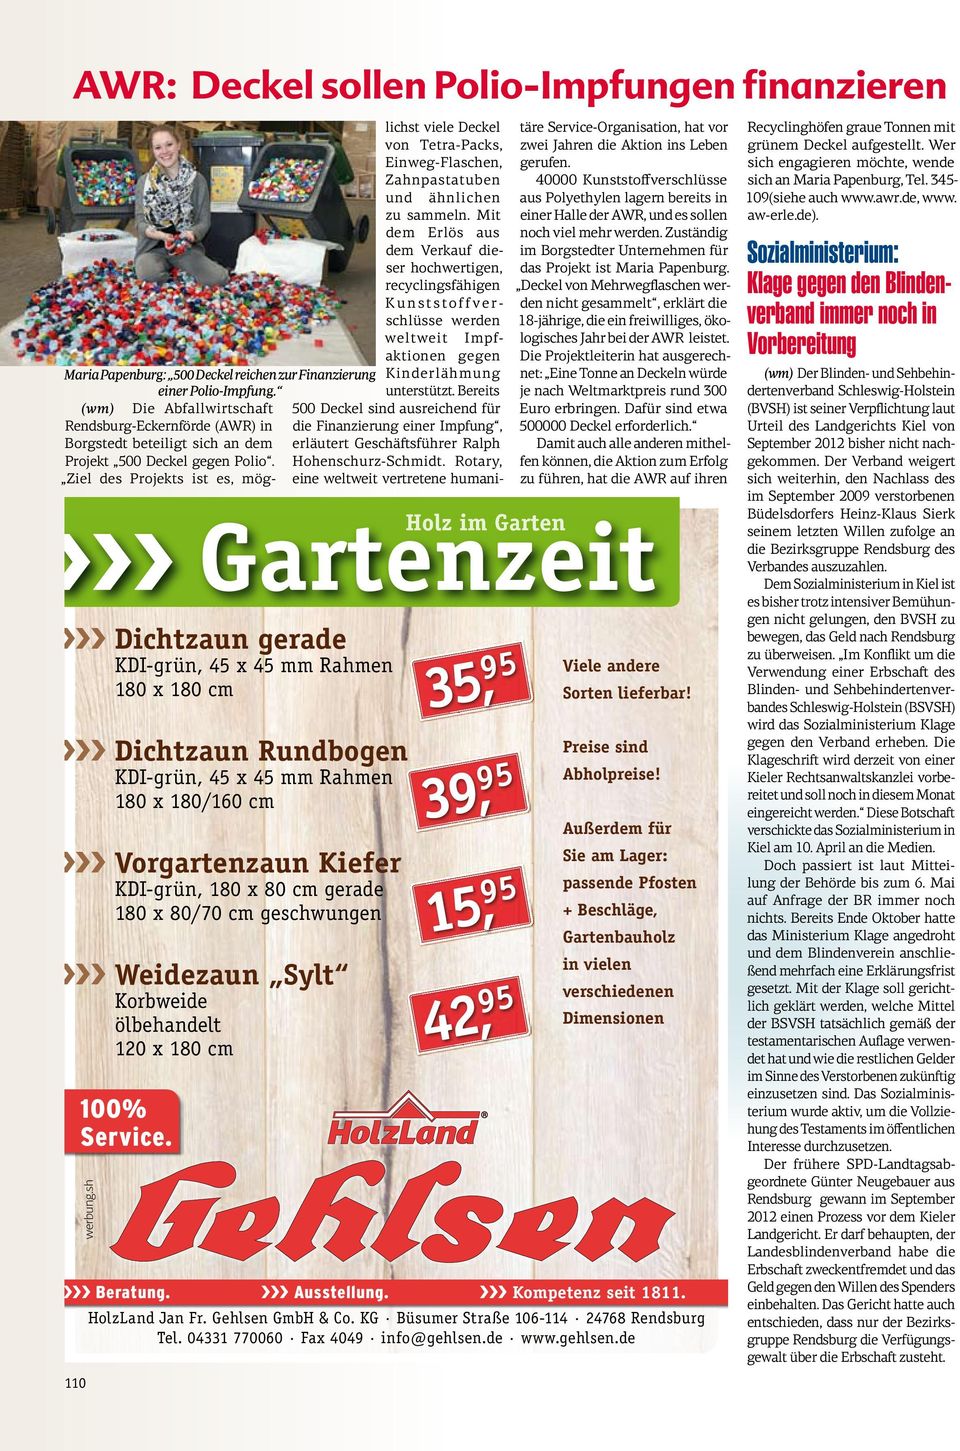 Polio-Impfung. unterstützt. Bereits (wm) Die Abfallwirtschaft 500 Deckel sind ausreichend für Rendsburg-Eckernförde (AWR) in Borgstedt beteiligt sich an dem Projekt 500 Deckel gegen Polio.